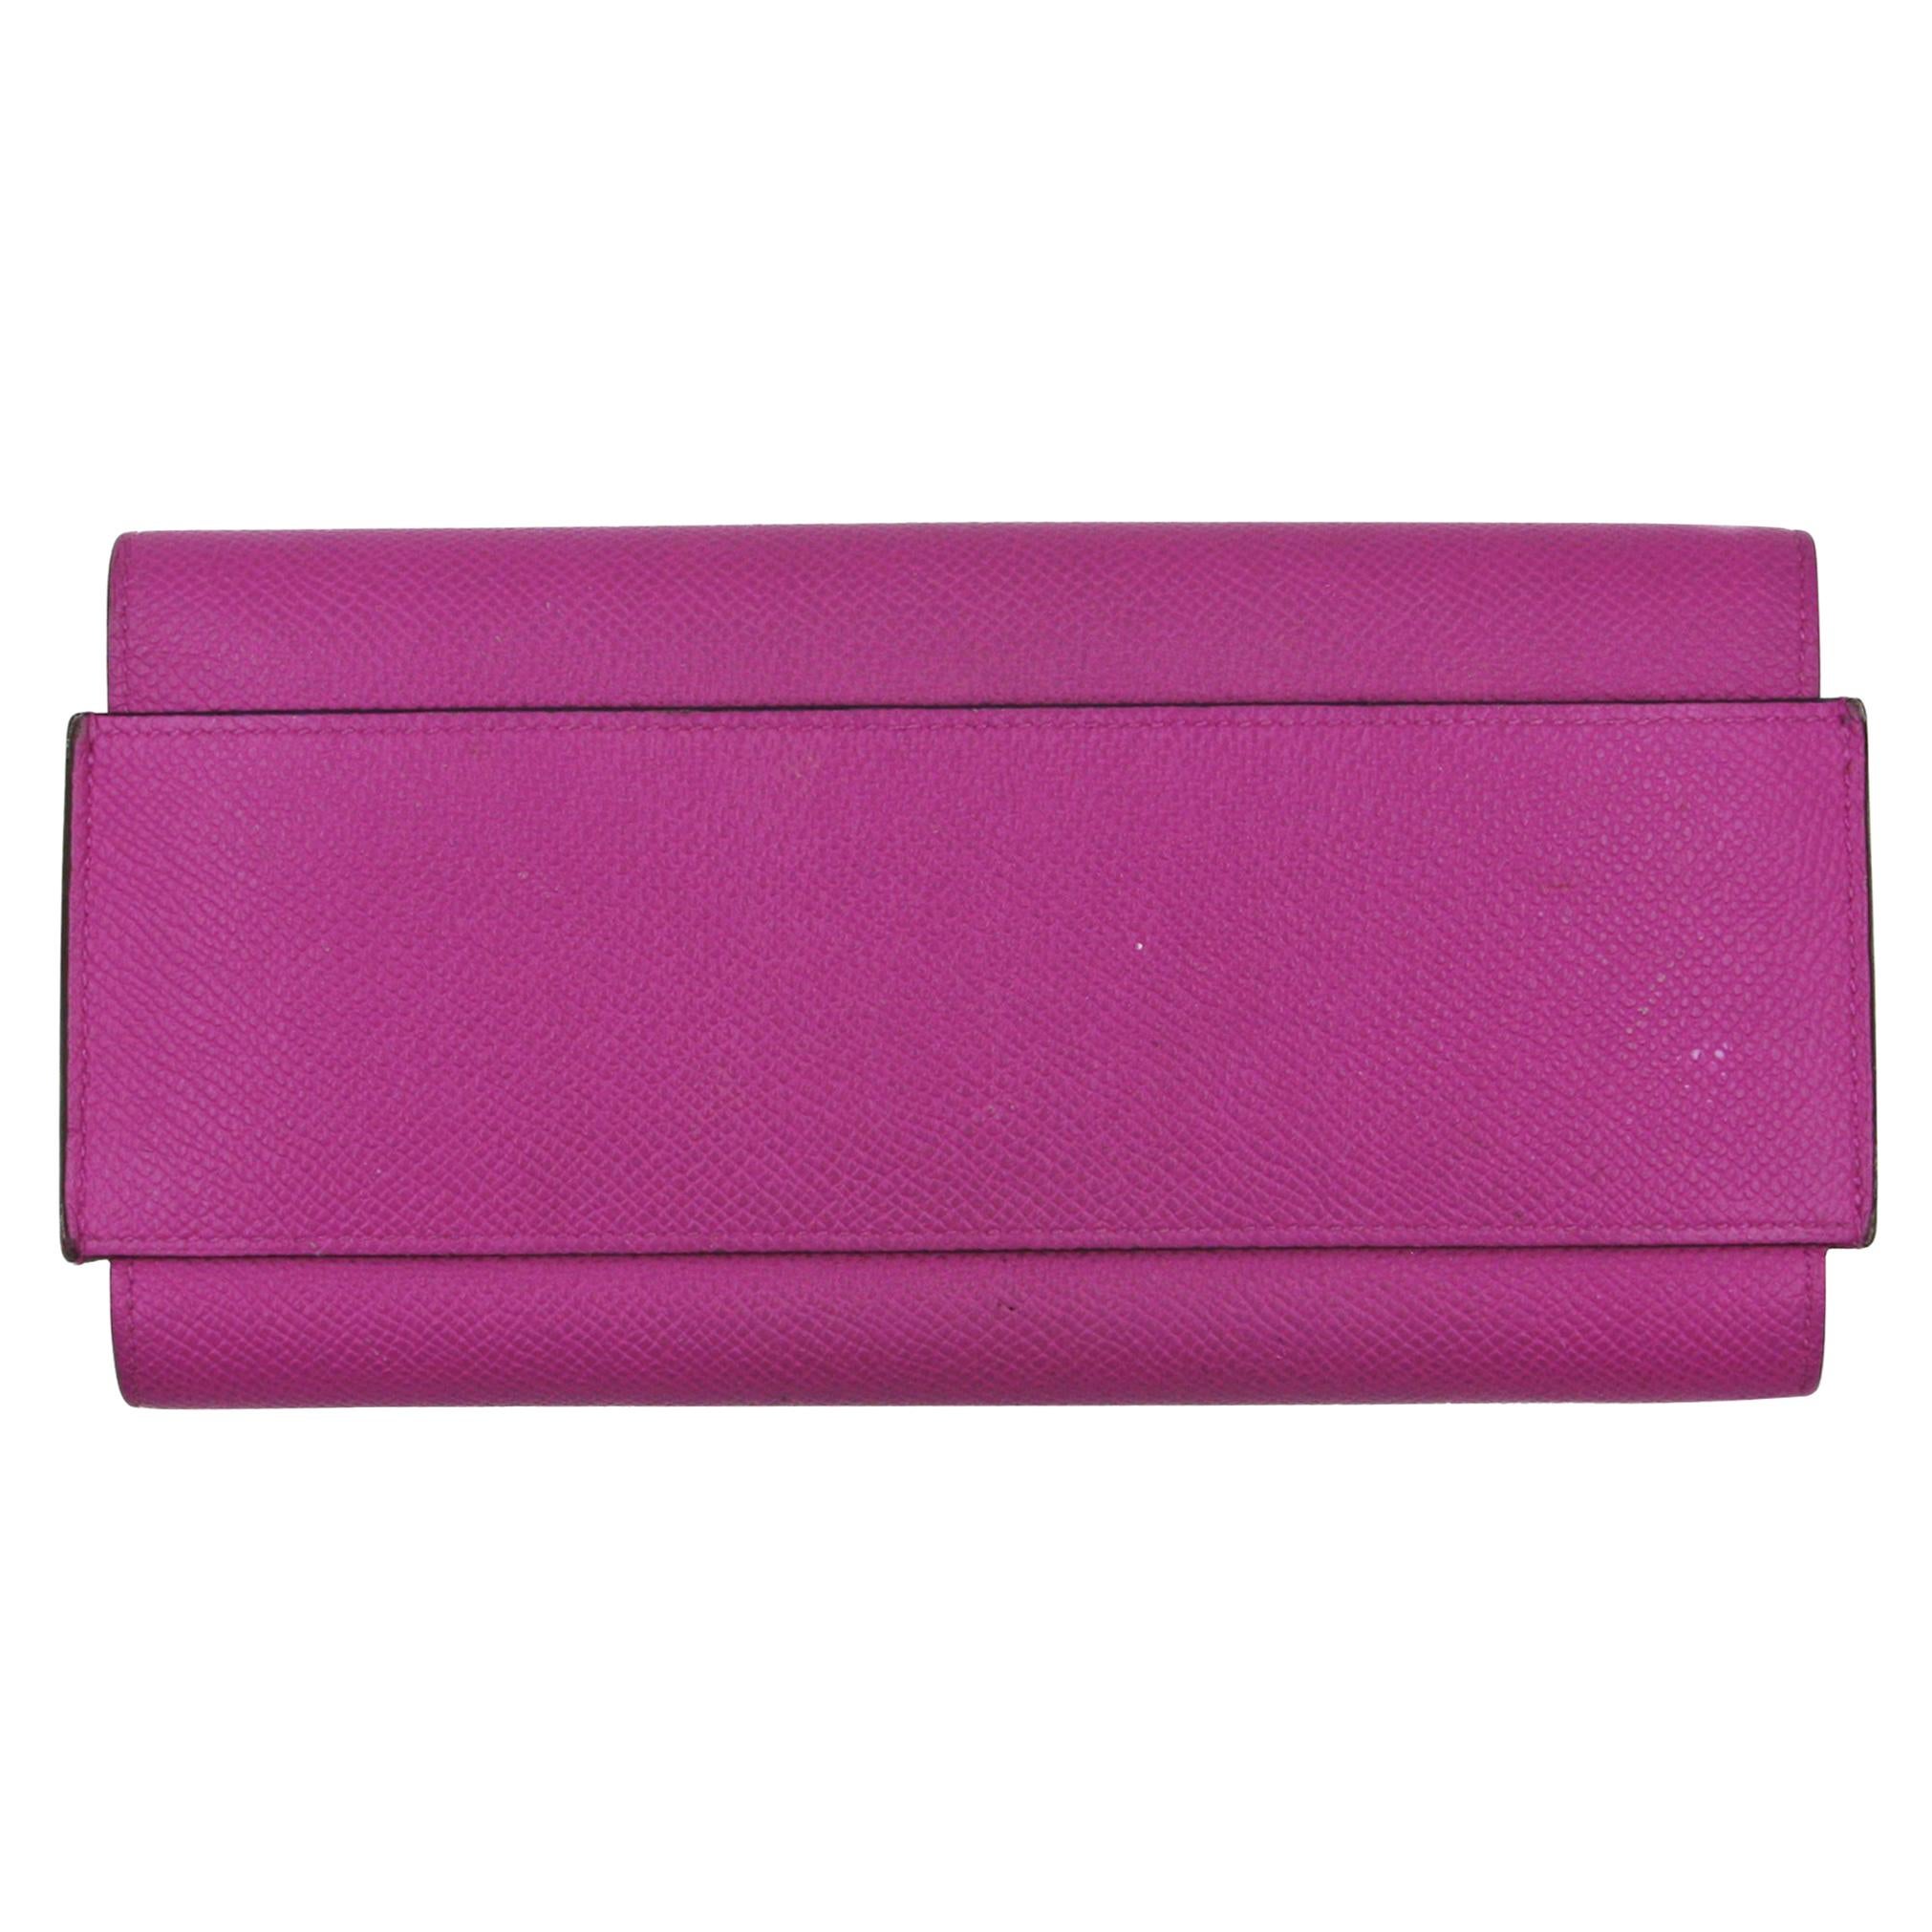 Hermes Epsom Passant long wallet For Sale